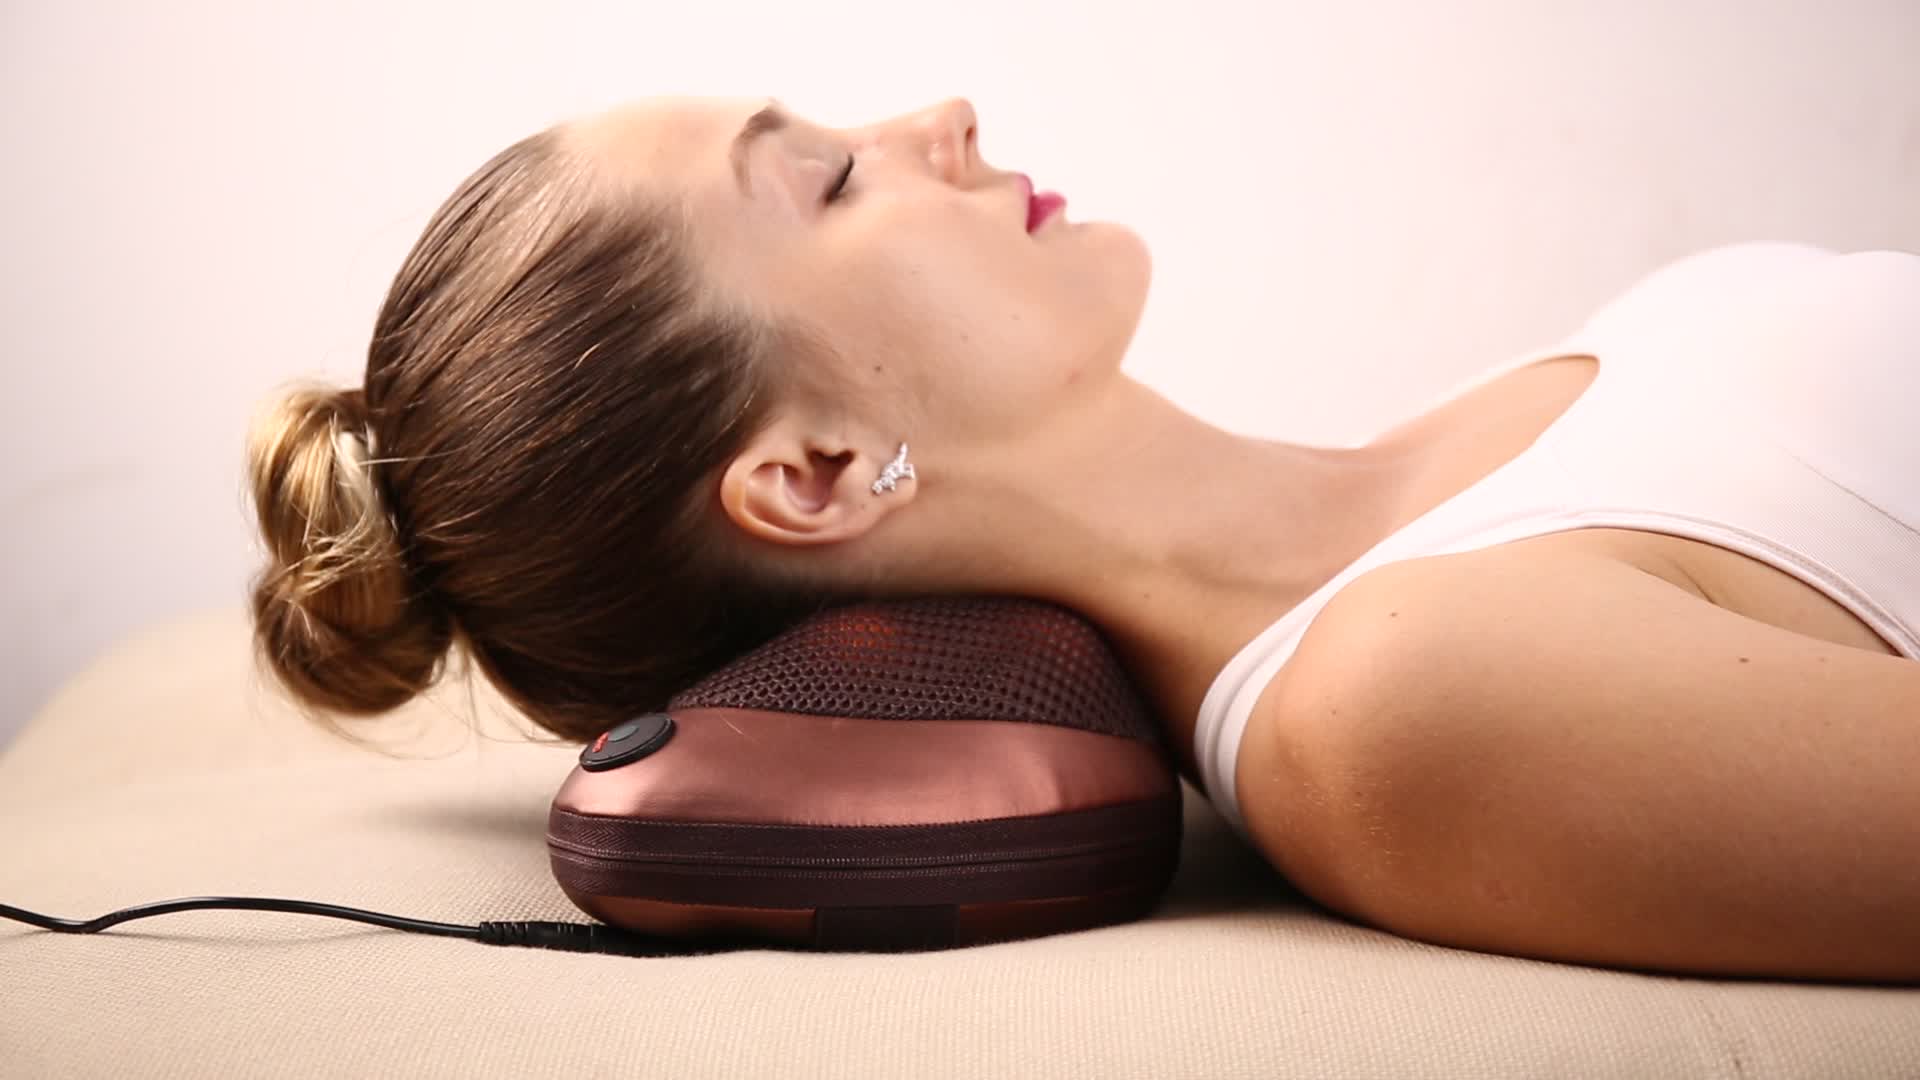 May massage body giúp bạn thư giãn và ngủ ngon giấc hơn